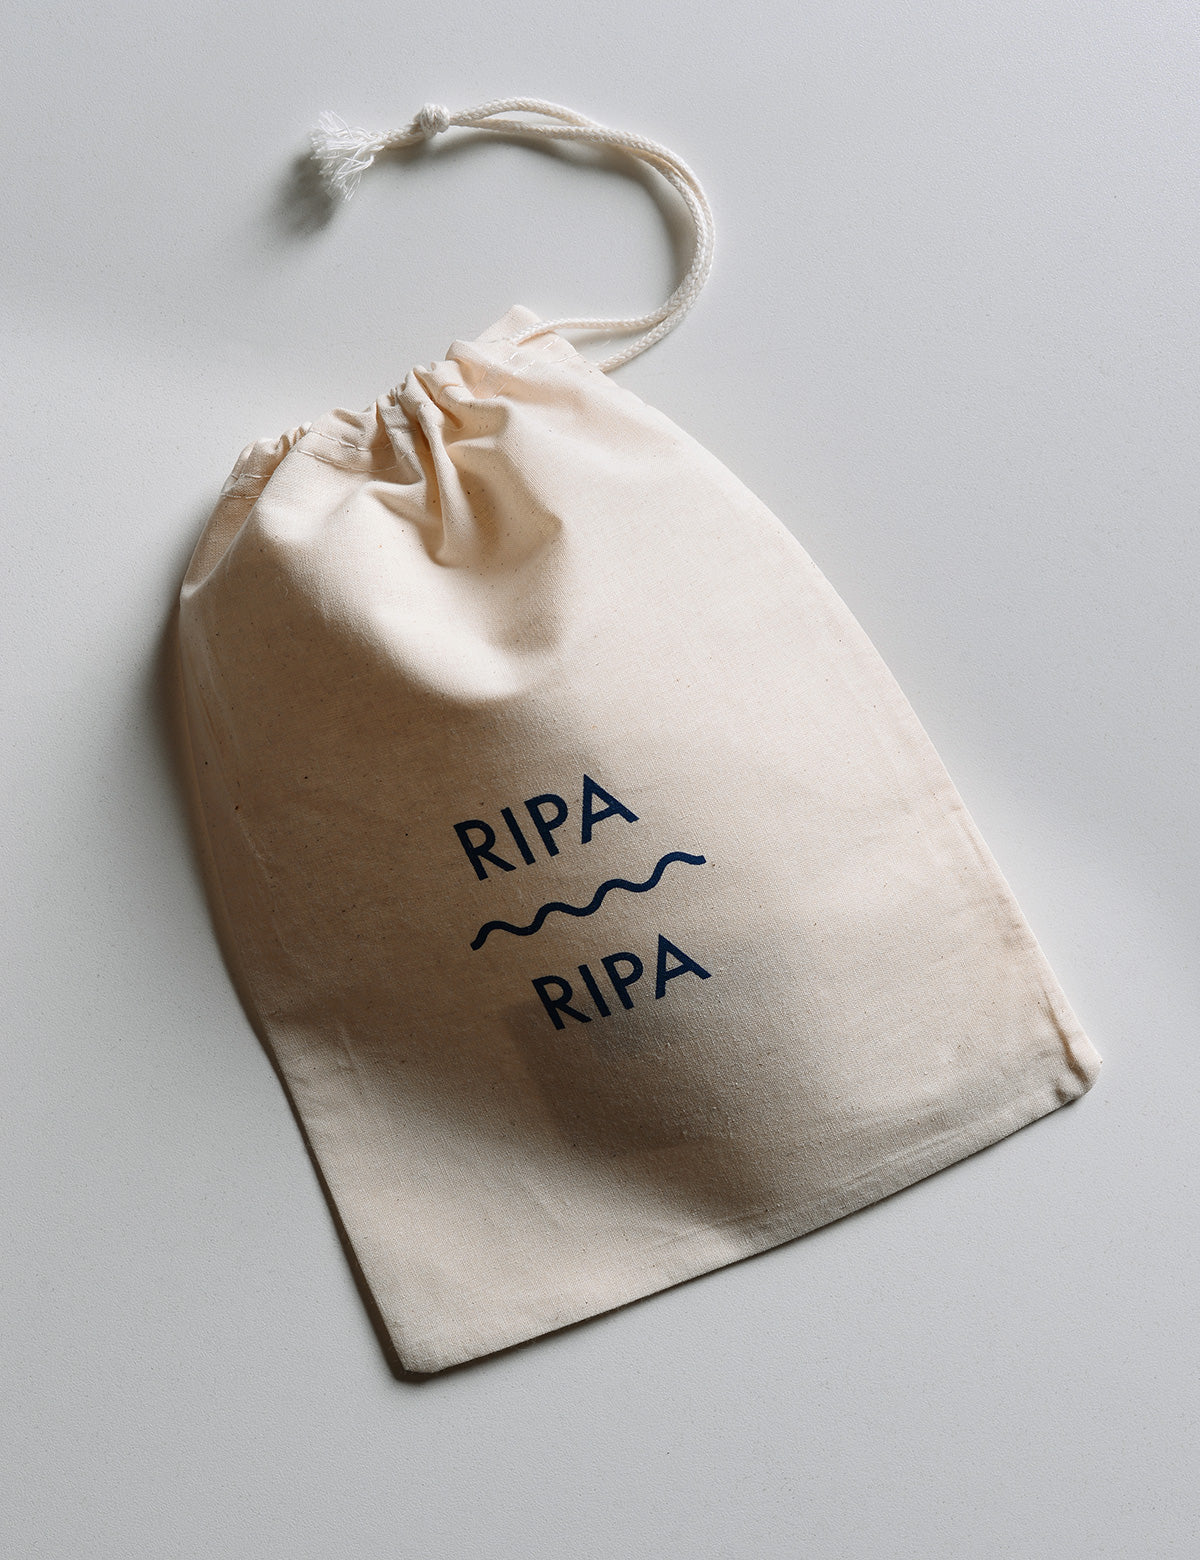 Travel bag Ripa Ripa Swim Shorts in Rosso Veneziano comes with